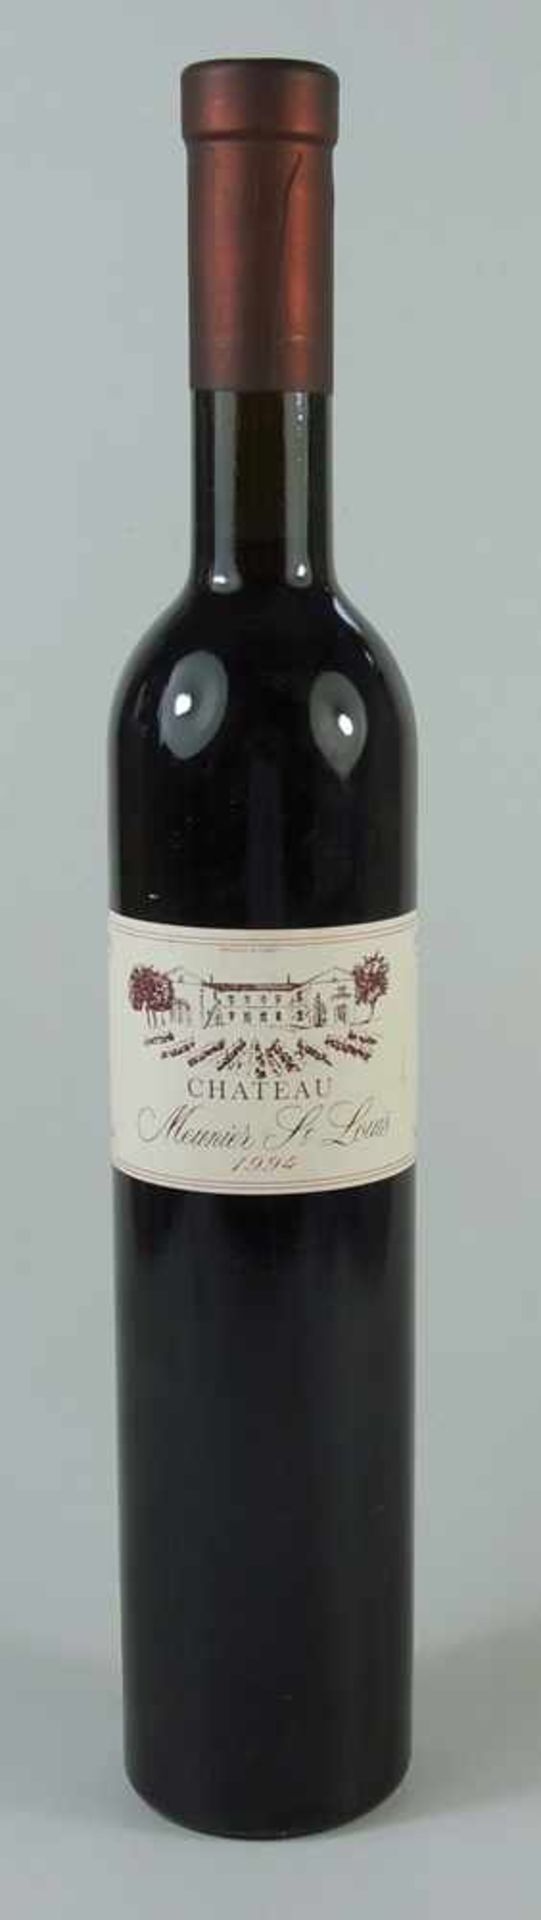 Rotwein "Château Meunier St. Louis", Corbière, 1994, 5cl, fachgerecht gelagert- - -18.00 % buyer's